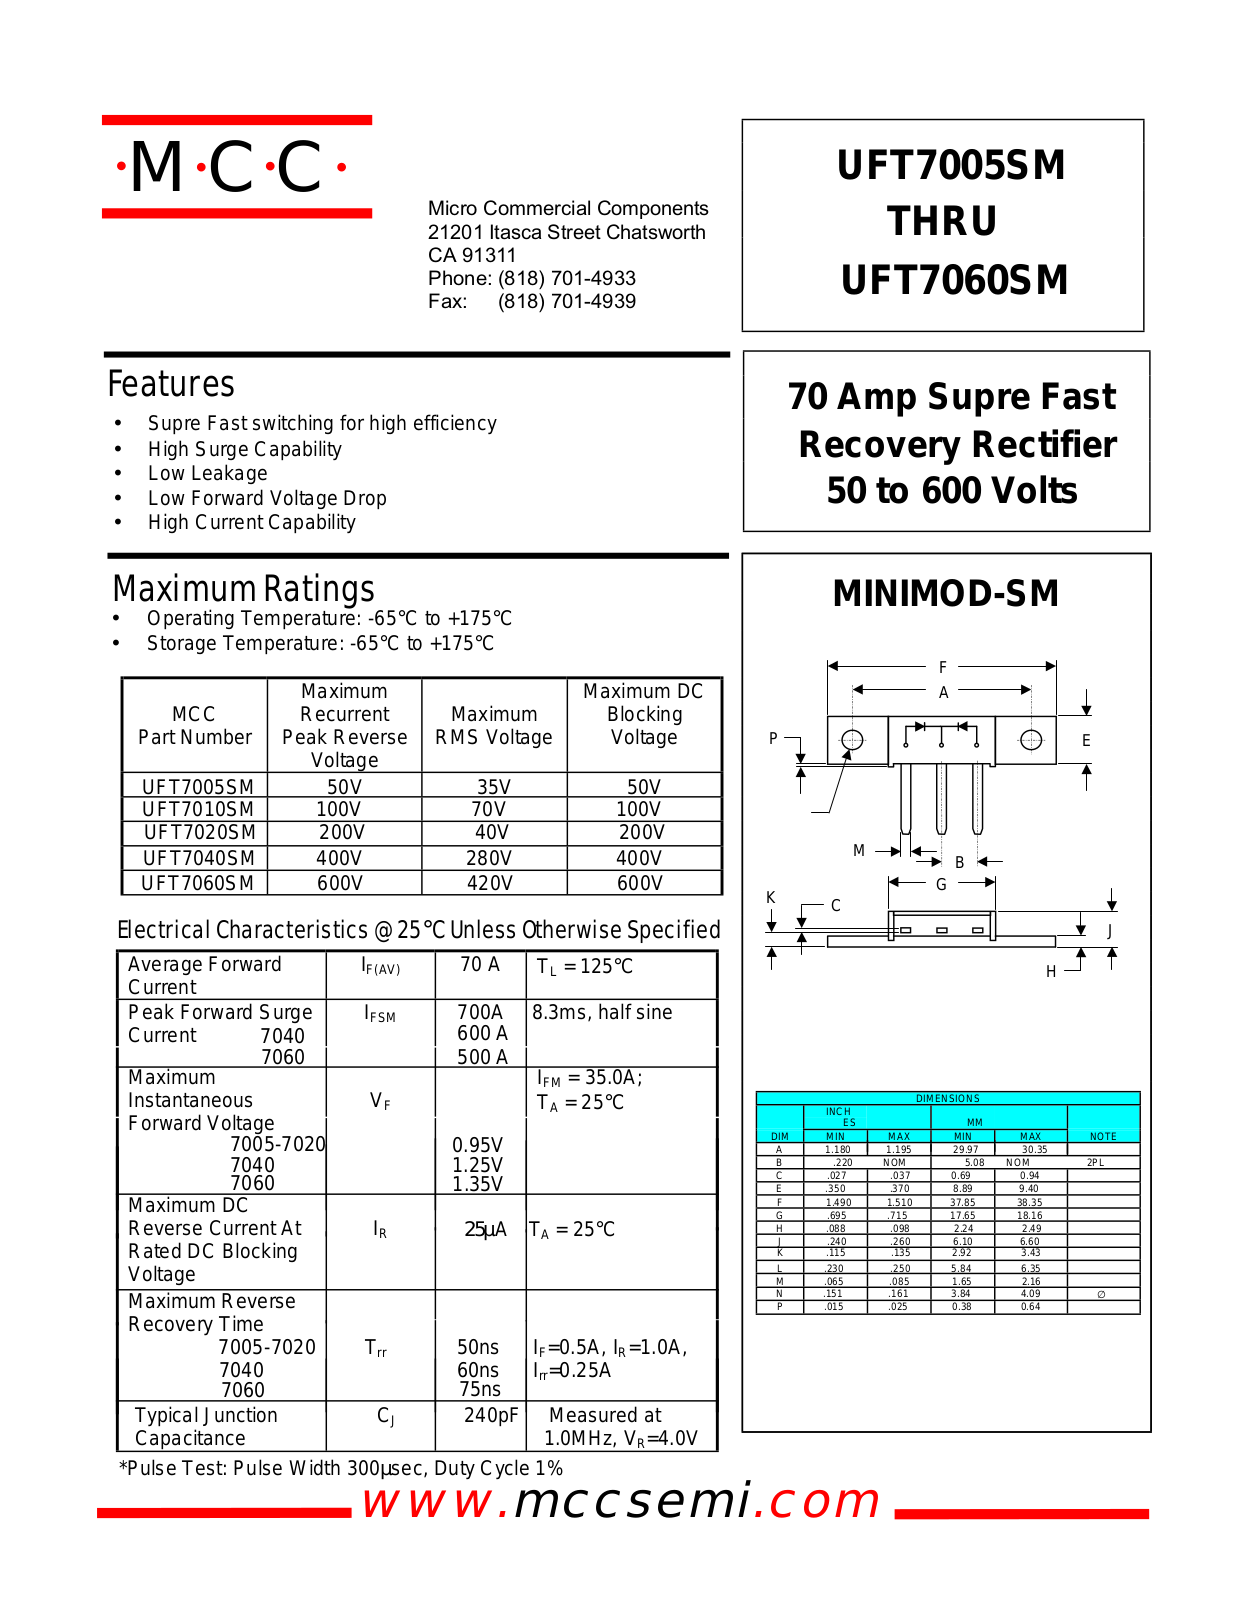 MCC UFT7040SM, UFT7020SM, UFT7010SM, UFT7005SM Datasheet